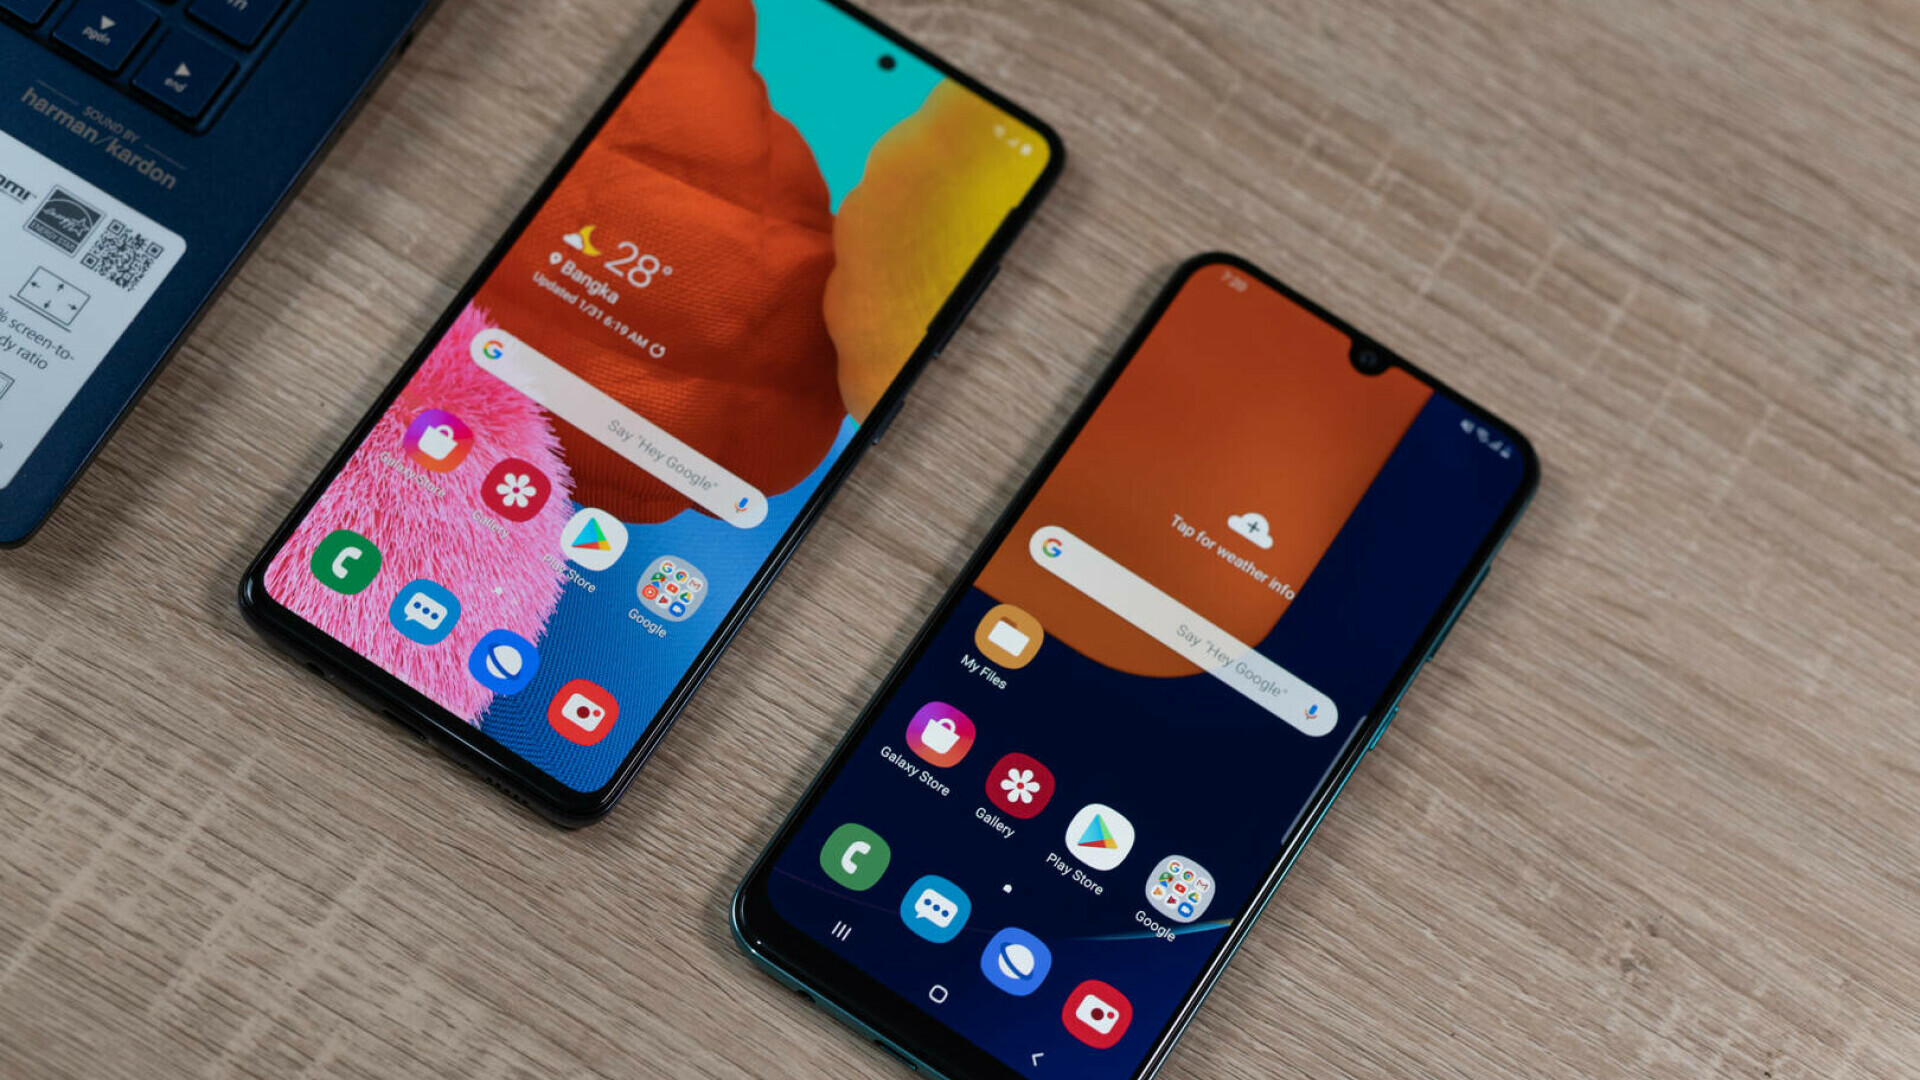 Diferențele dintre telefoanele Samsung și Android și de ce apare confuzia la nivelul utilizatorilor obișnuiți